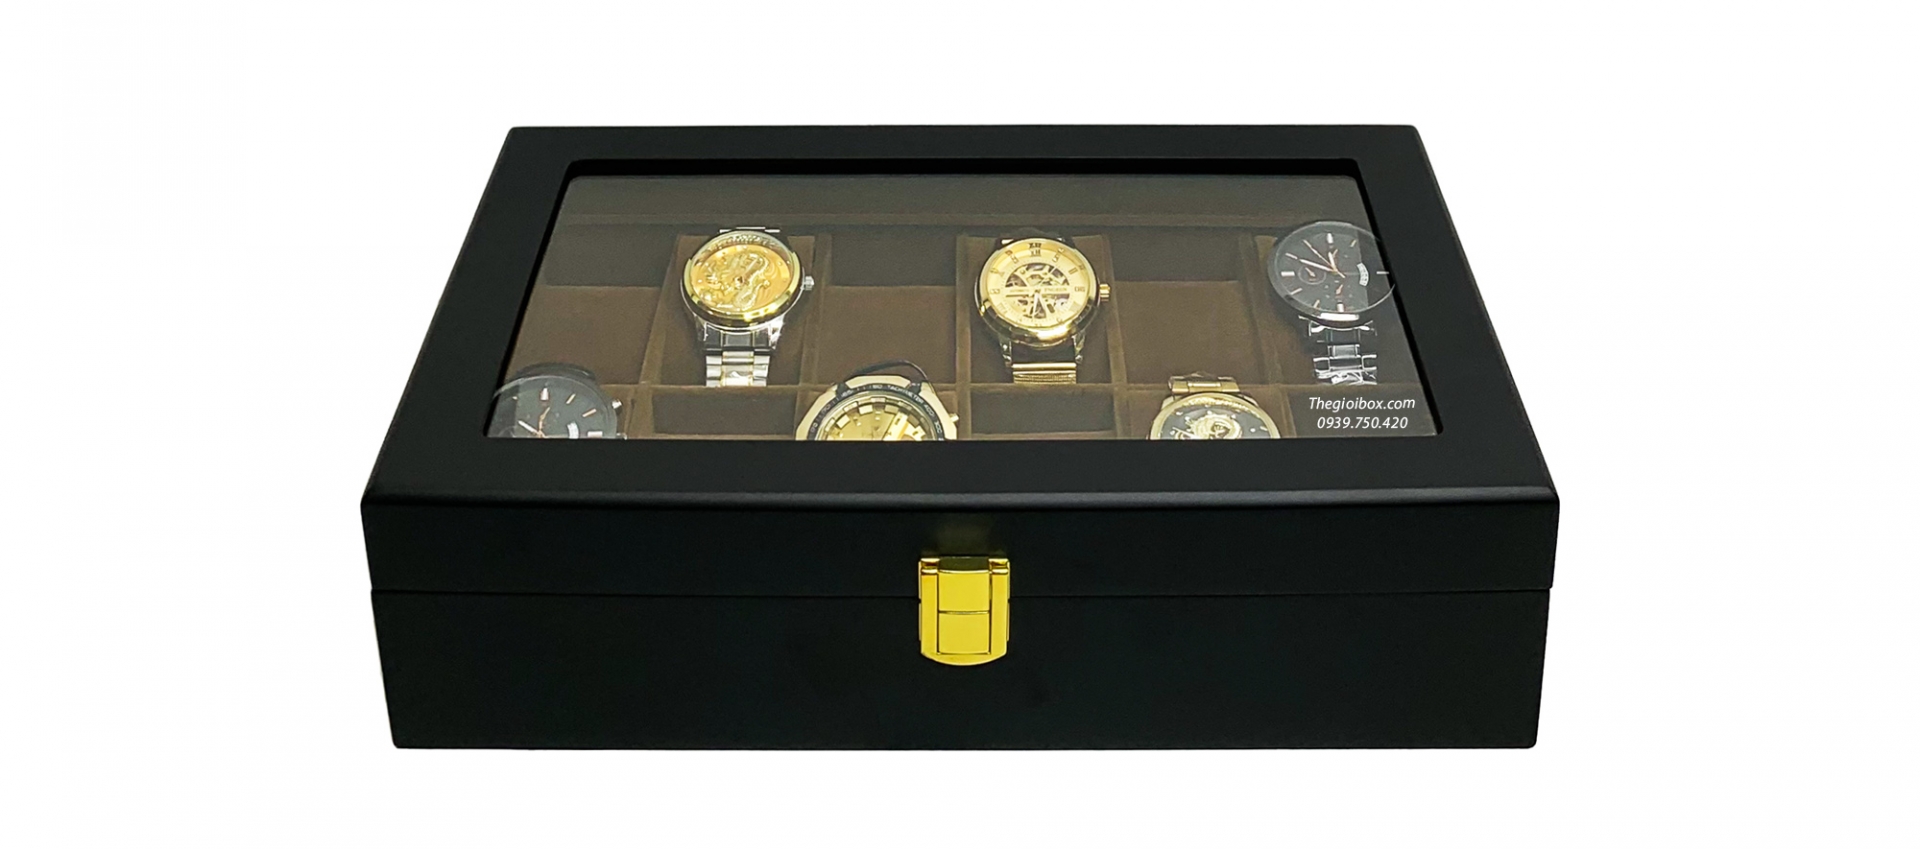 hộp để 12 chiếc đồng hồ vỏ gỗ đen - lót nhung nâu nhỏ gọn, cao cấp, giá rẻ